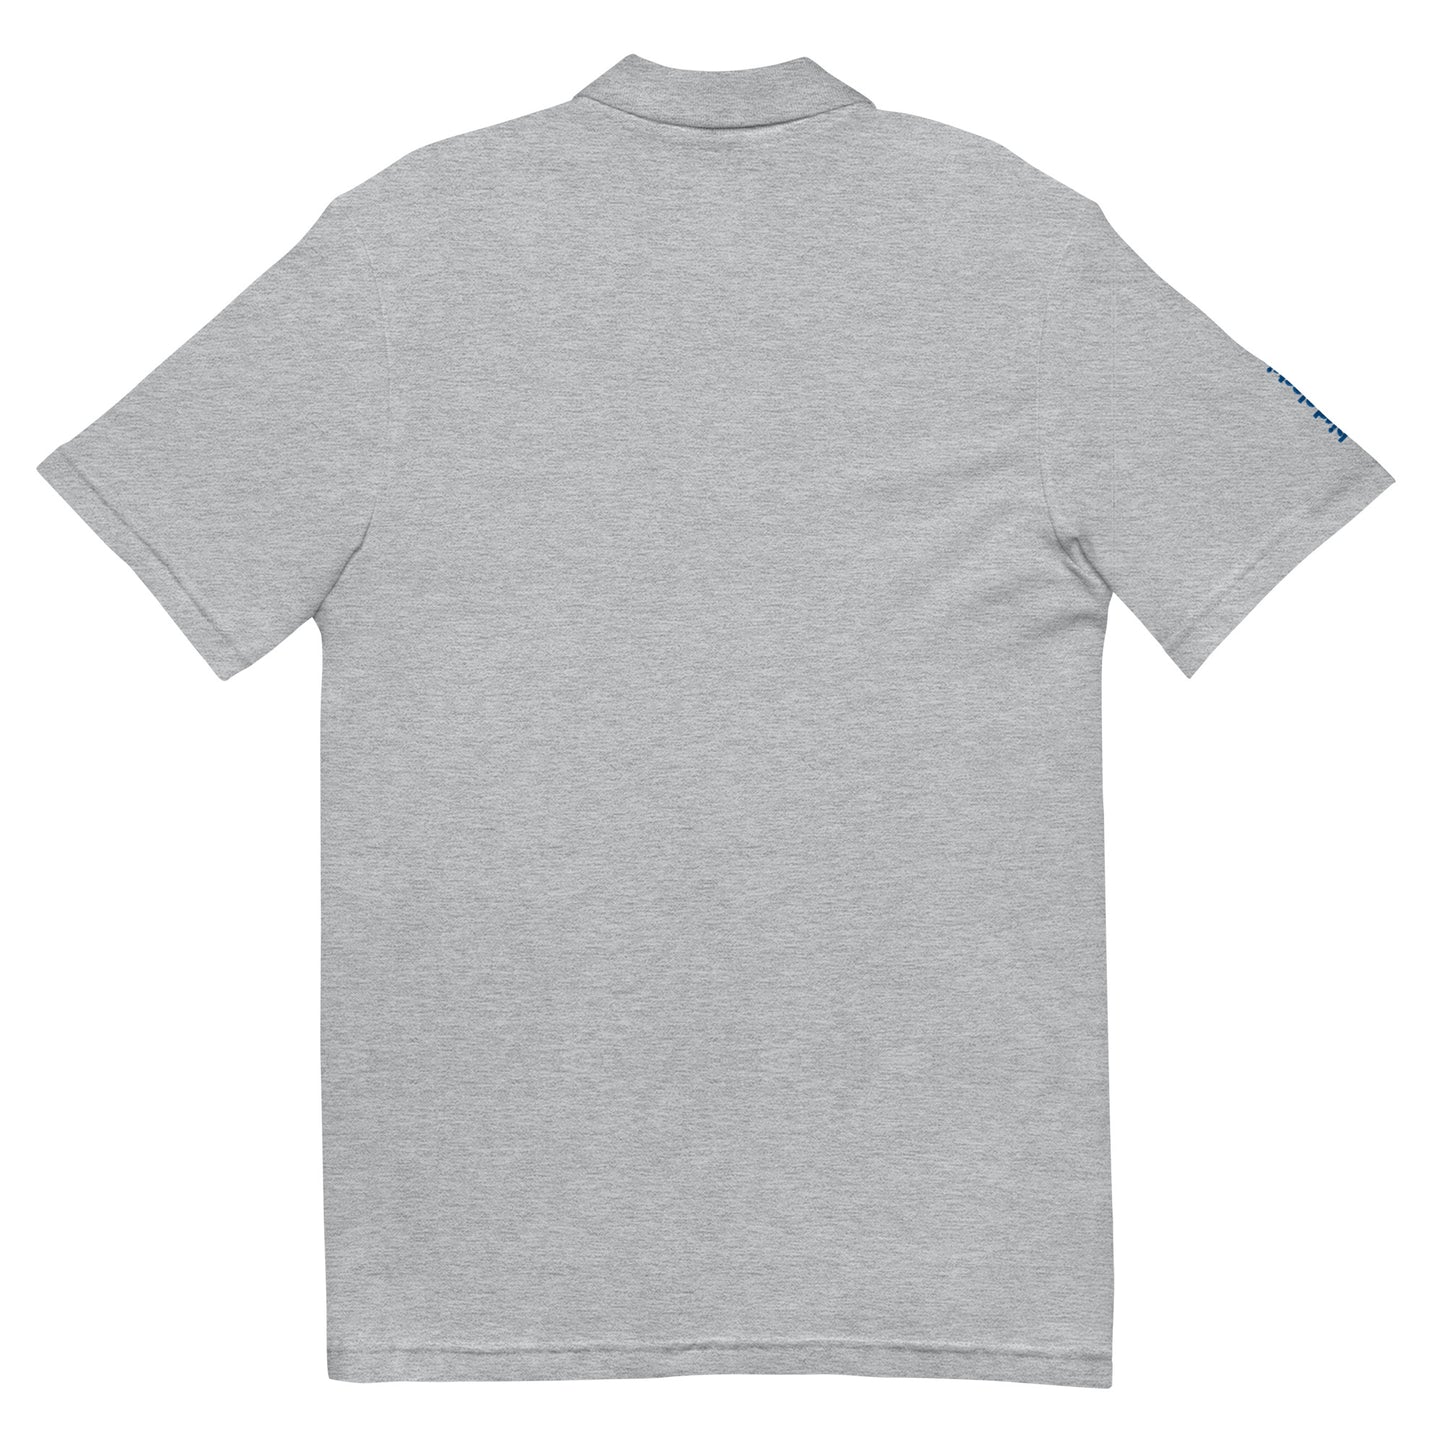 A1A Men’s Pique Polo Shirt - Embroidered